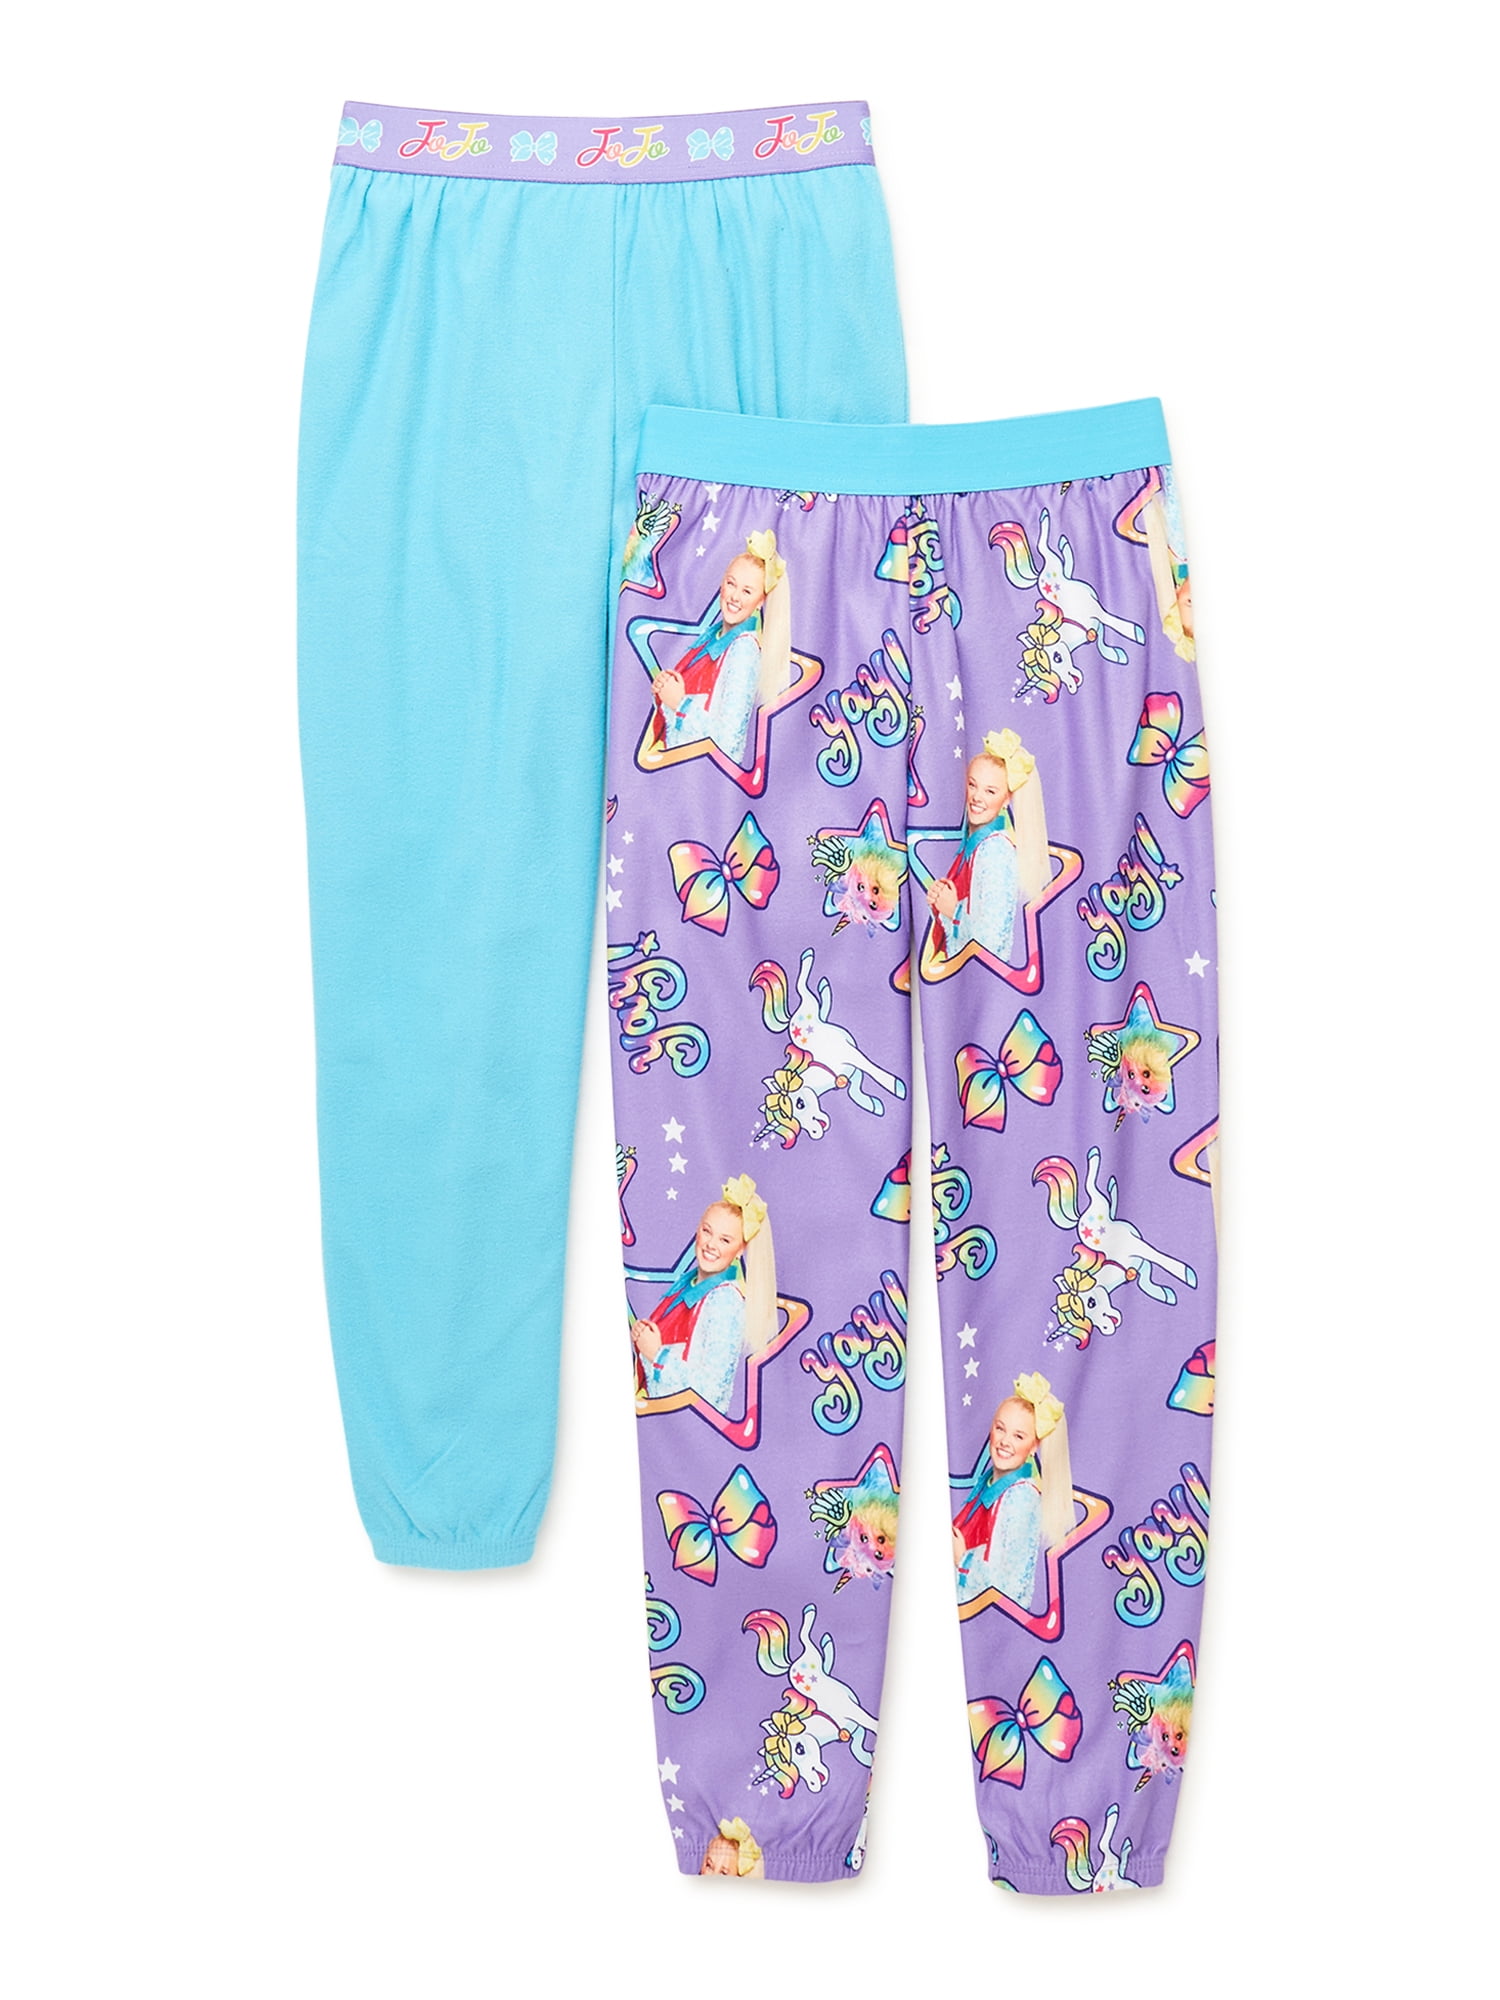 Night Pajama Pants - Etsy